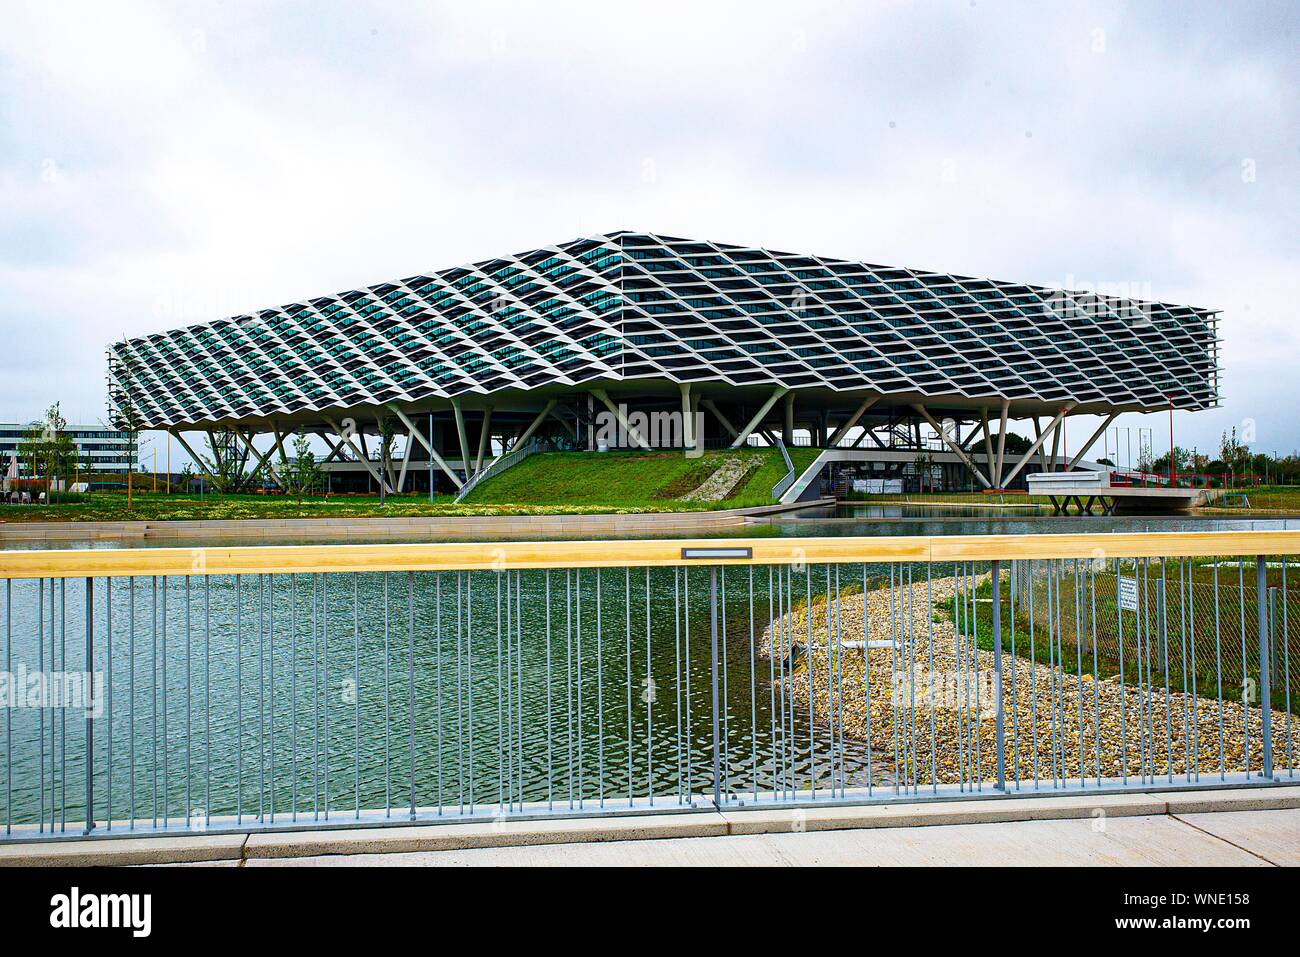 Herzogenaurach, Deutschland. 29. Juli, 2019. Adidas Arena, das  Verwaltungsgebäude der adidas AG, erinnert an eine Fußball-Arena,  Fußball-Stadion, hat eine Größe von 52.000 Quadratmetern und bietet Platz  für mehr als 2.000 Mitarbeiter und